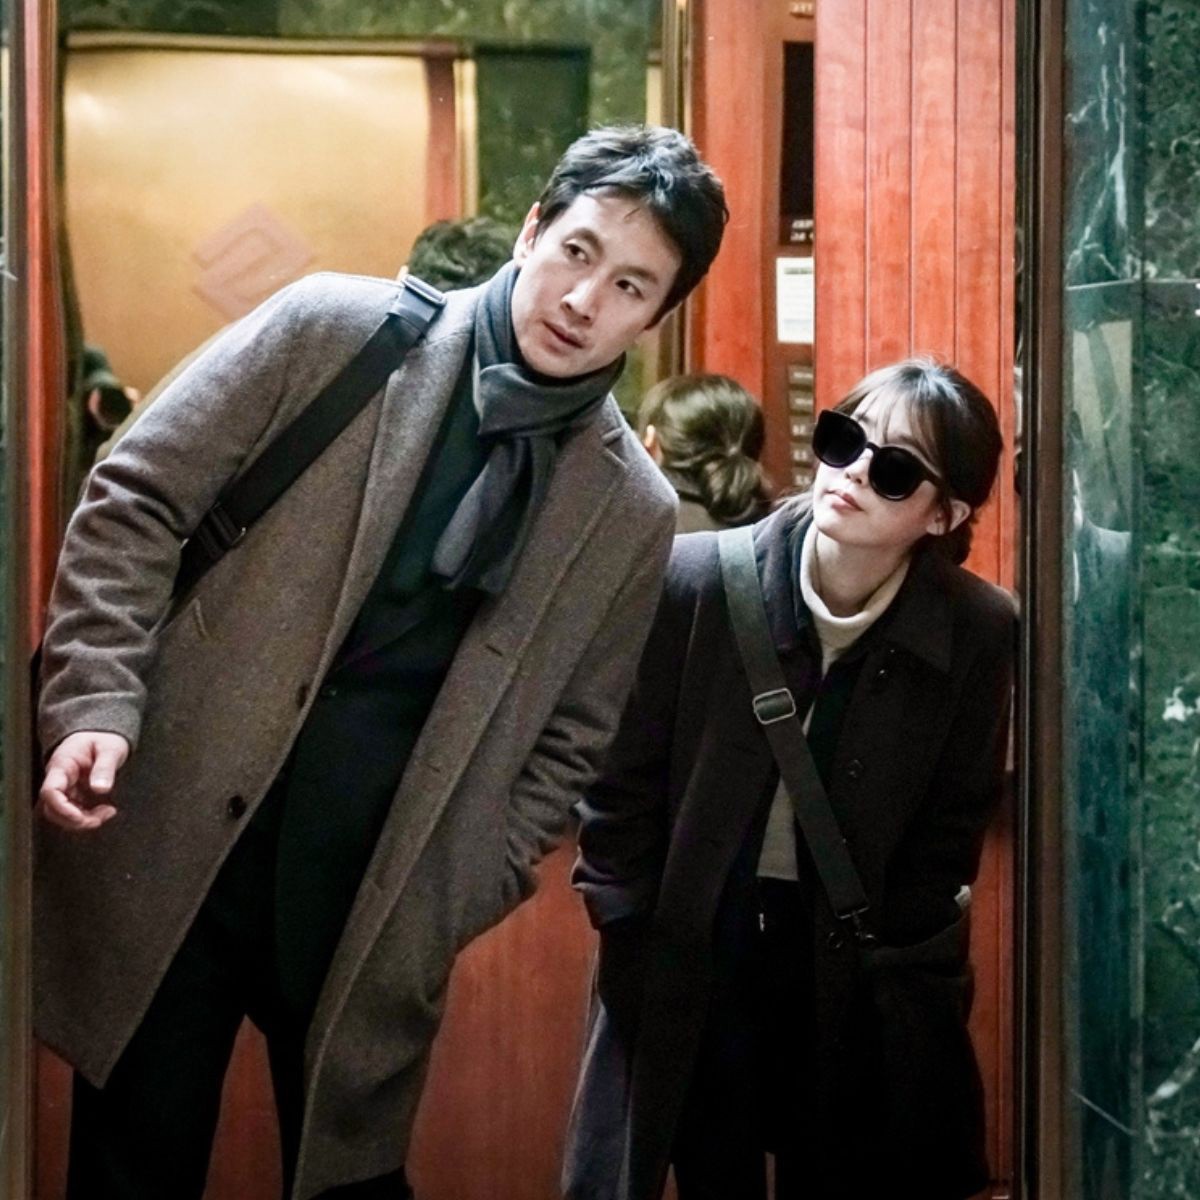 View -             Lee Sun Kyun từ diễn viên 'phái thực lực' đến kết thúc cuộc đời trong đau đớn    